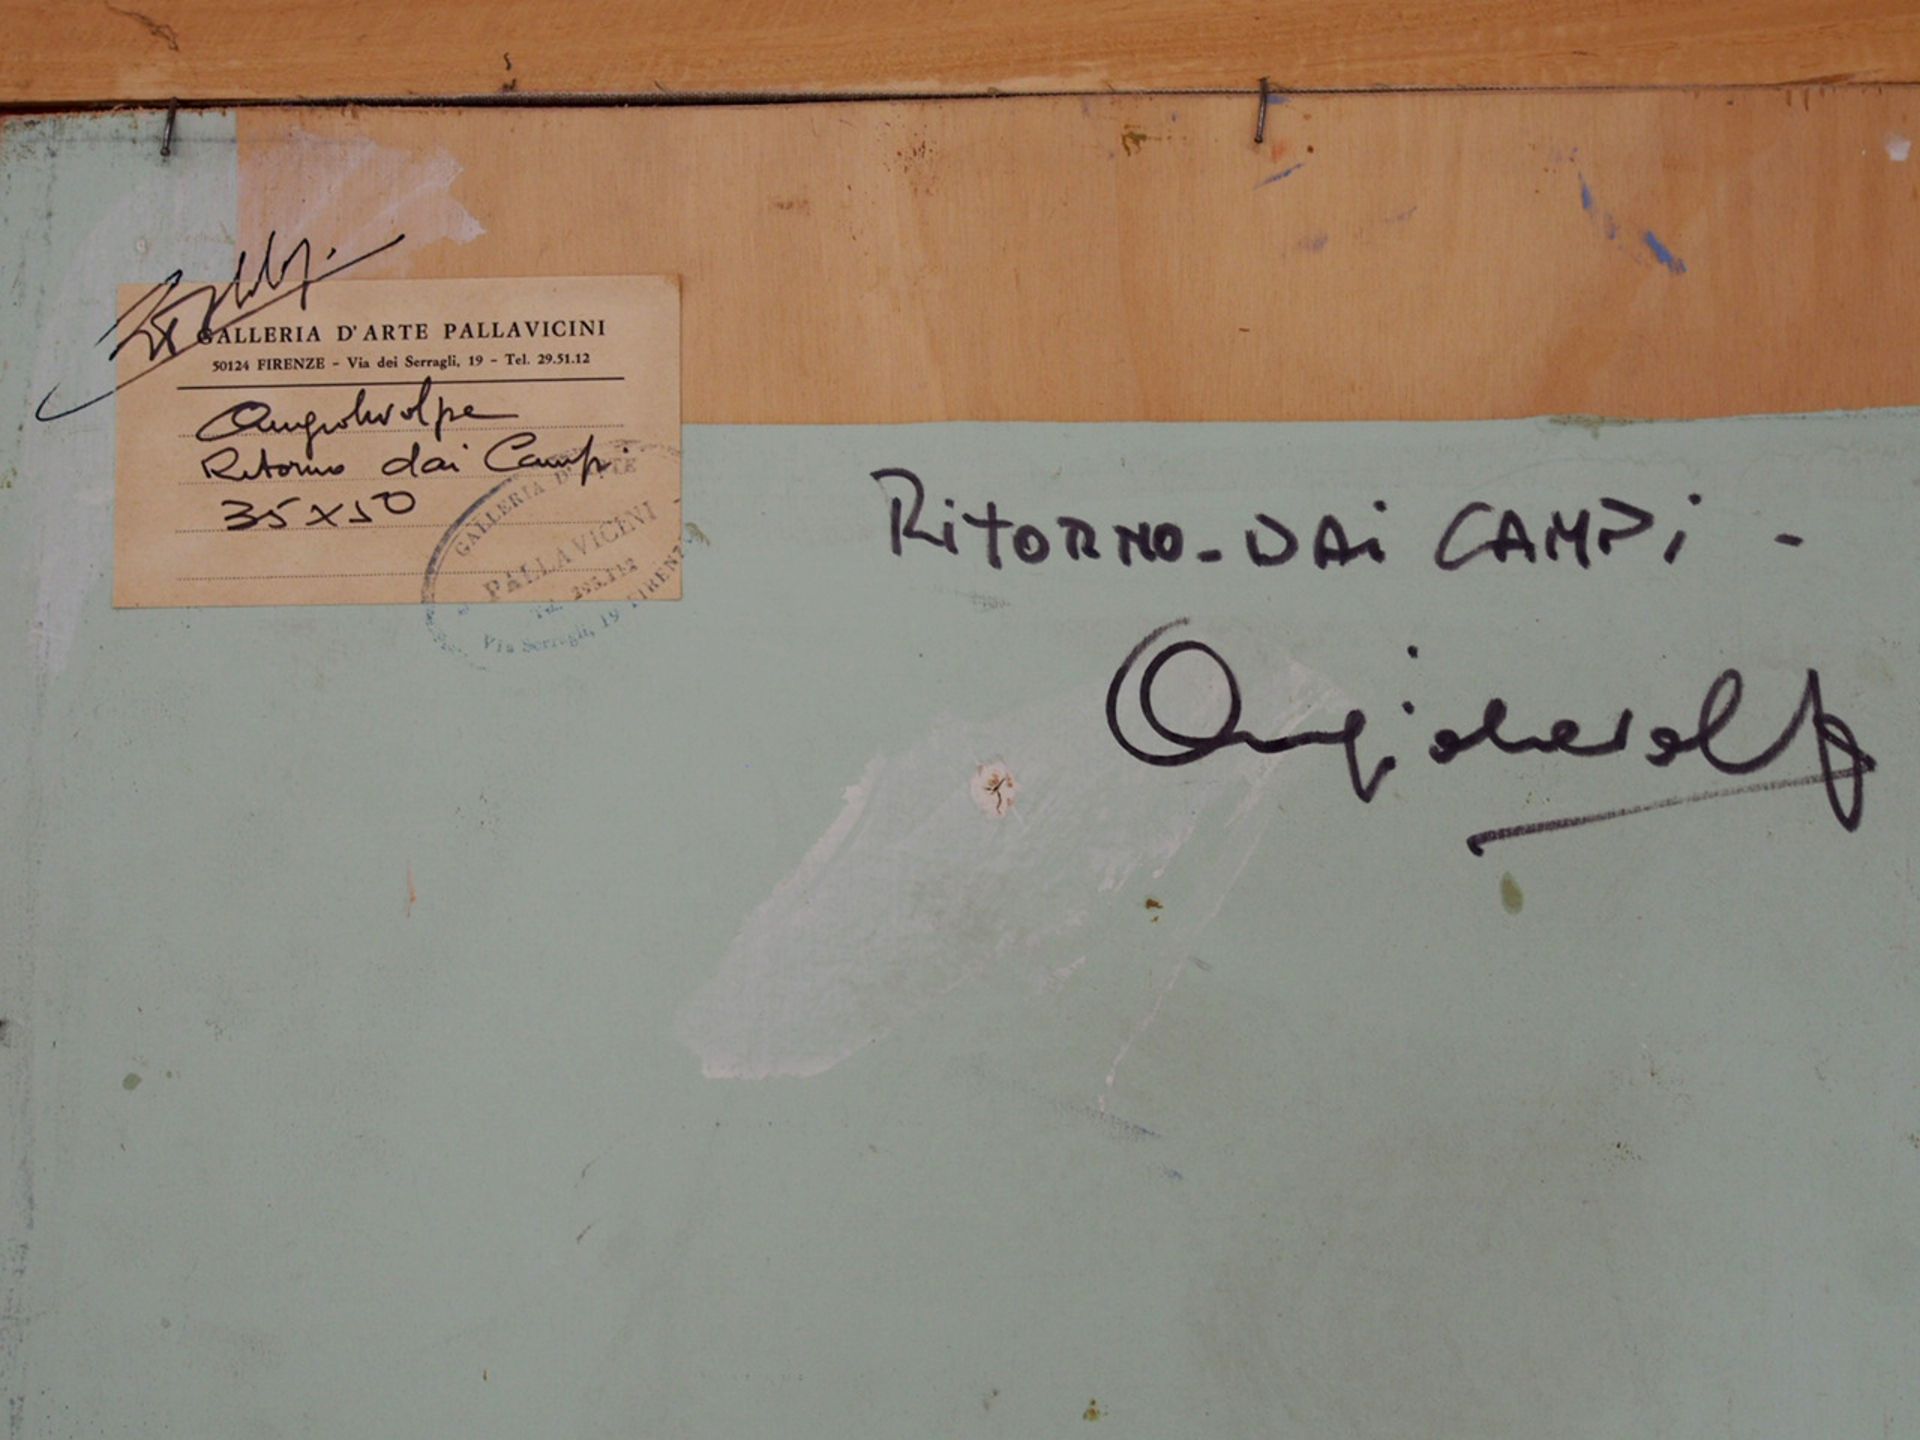 VOLPE, Angiolo: Ritorno dai Campi - Image 3 of 3